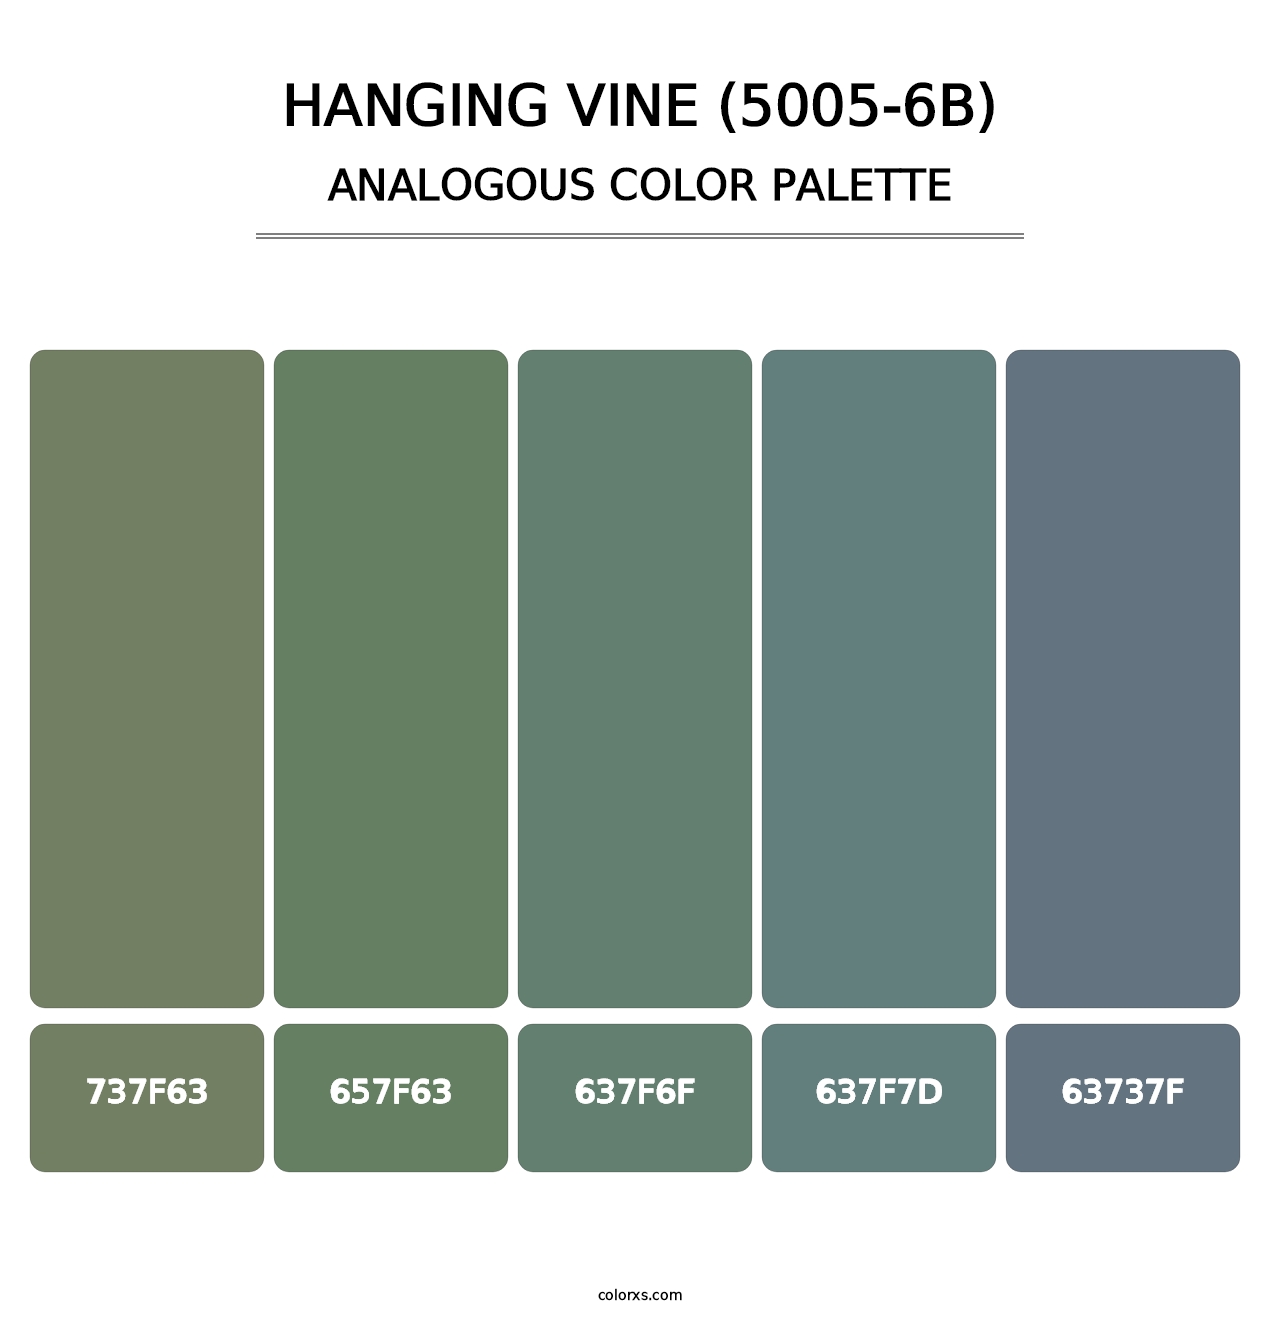 Hanging Vine (5005-6B) - Analogous Color Palette